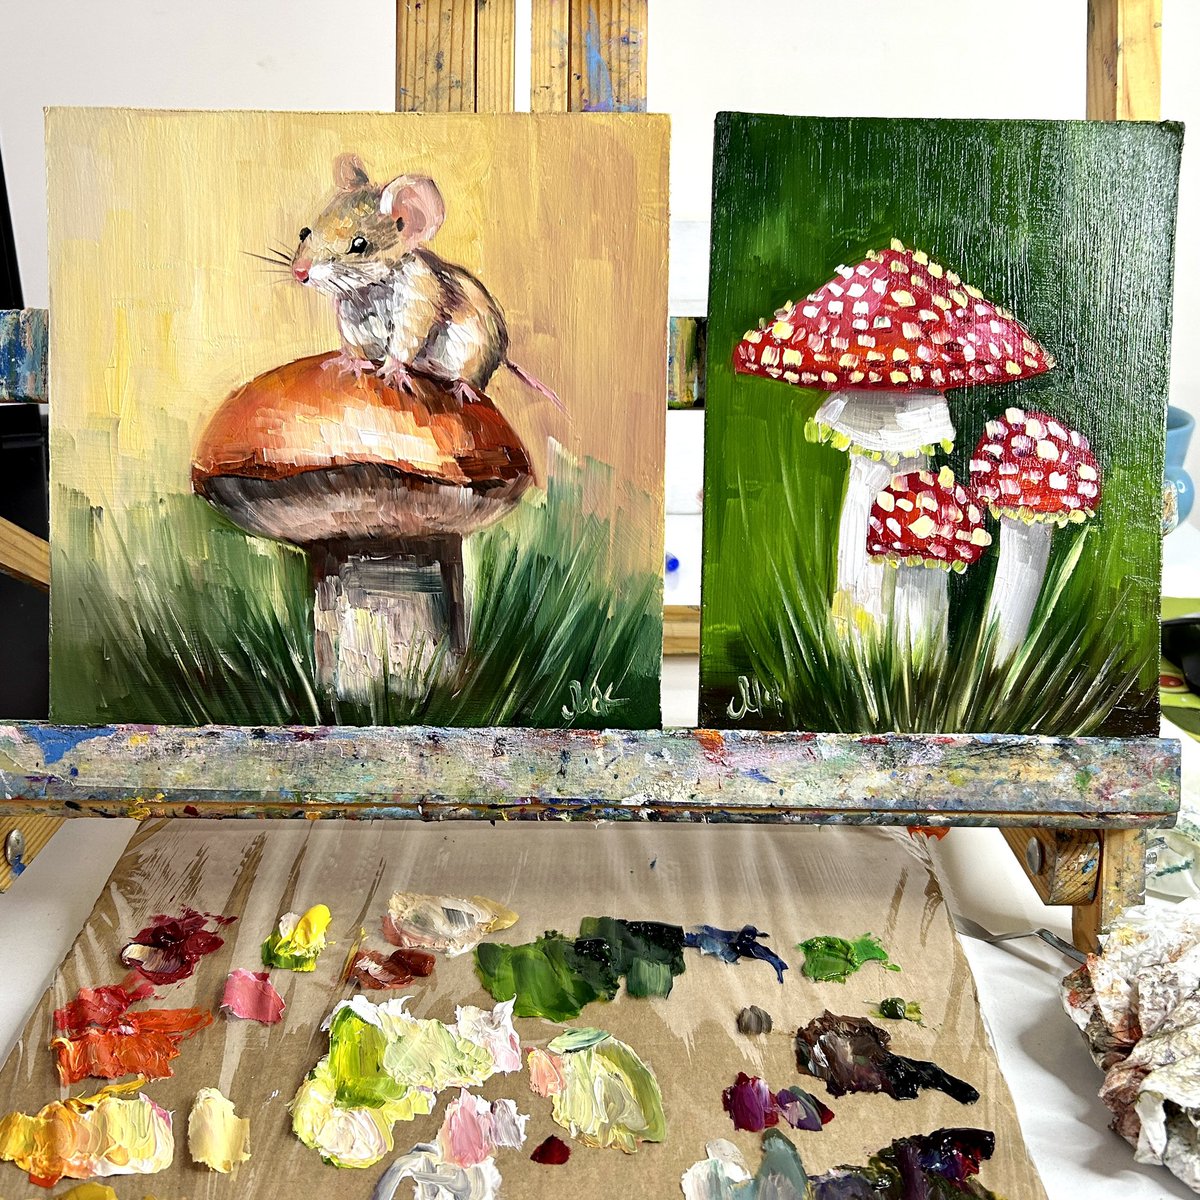 Today painting 

#mushrooms #mushroompainting #fungipainting #fungiart #mushroomart #amonitamusic #painting #oilpainting #dailypainter #dailypainting #sketch #artist